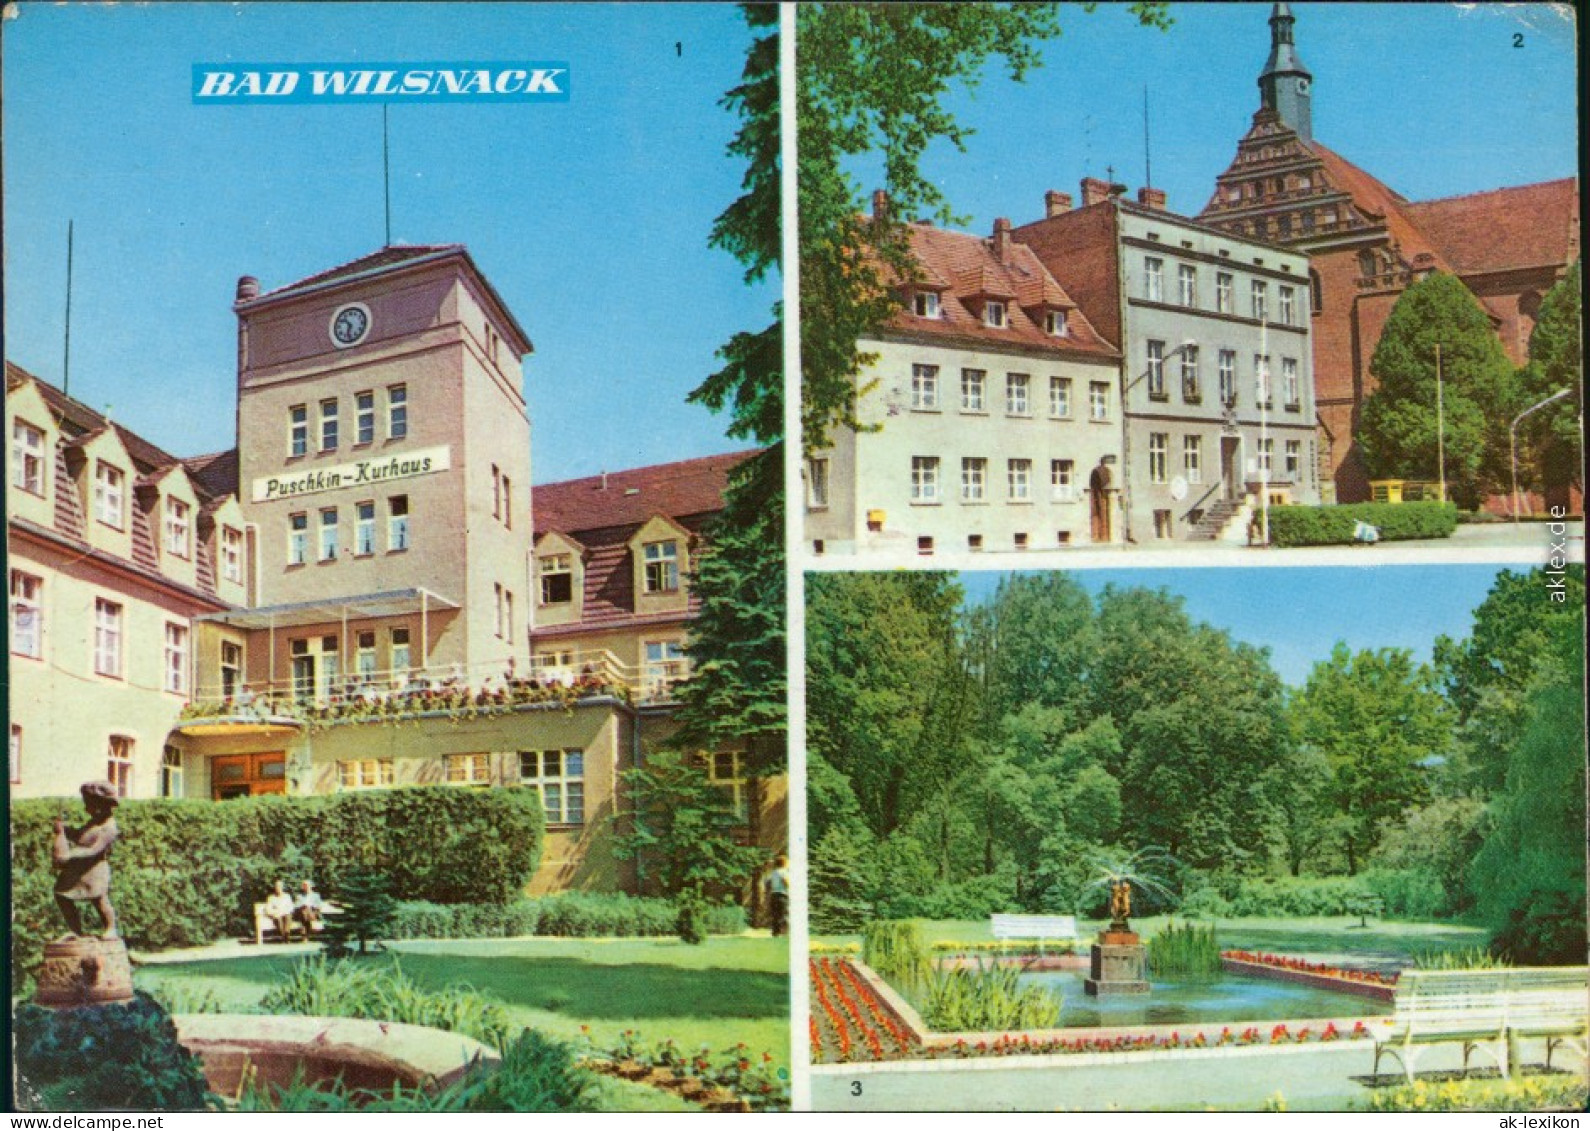 Bad Wilsnack 1. Puschkin-Kurhaus, 2. Rathaus, 3. Kurpark 1969 - Bad Wilsnack